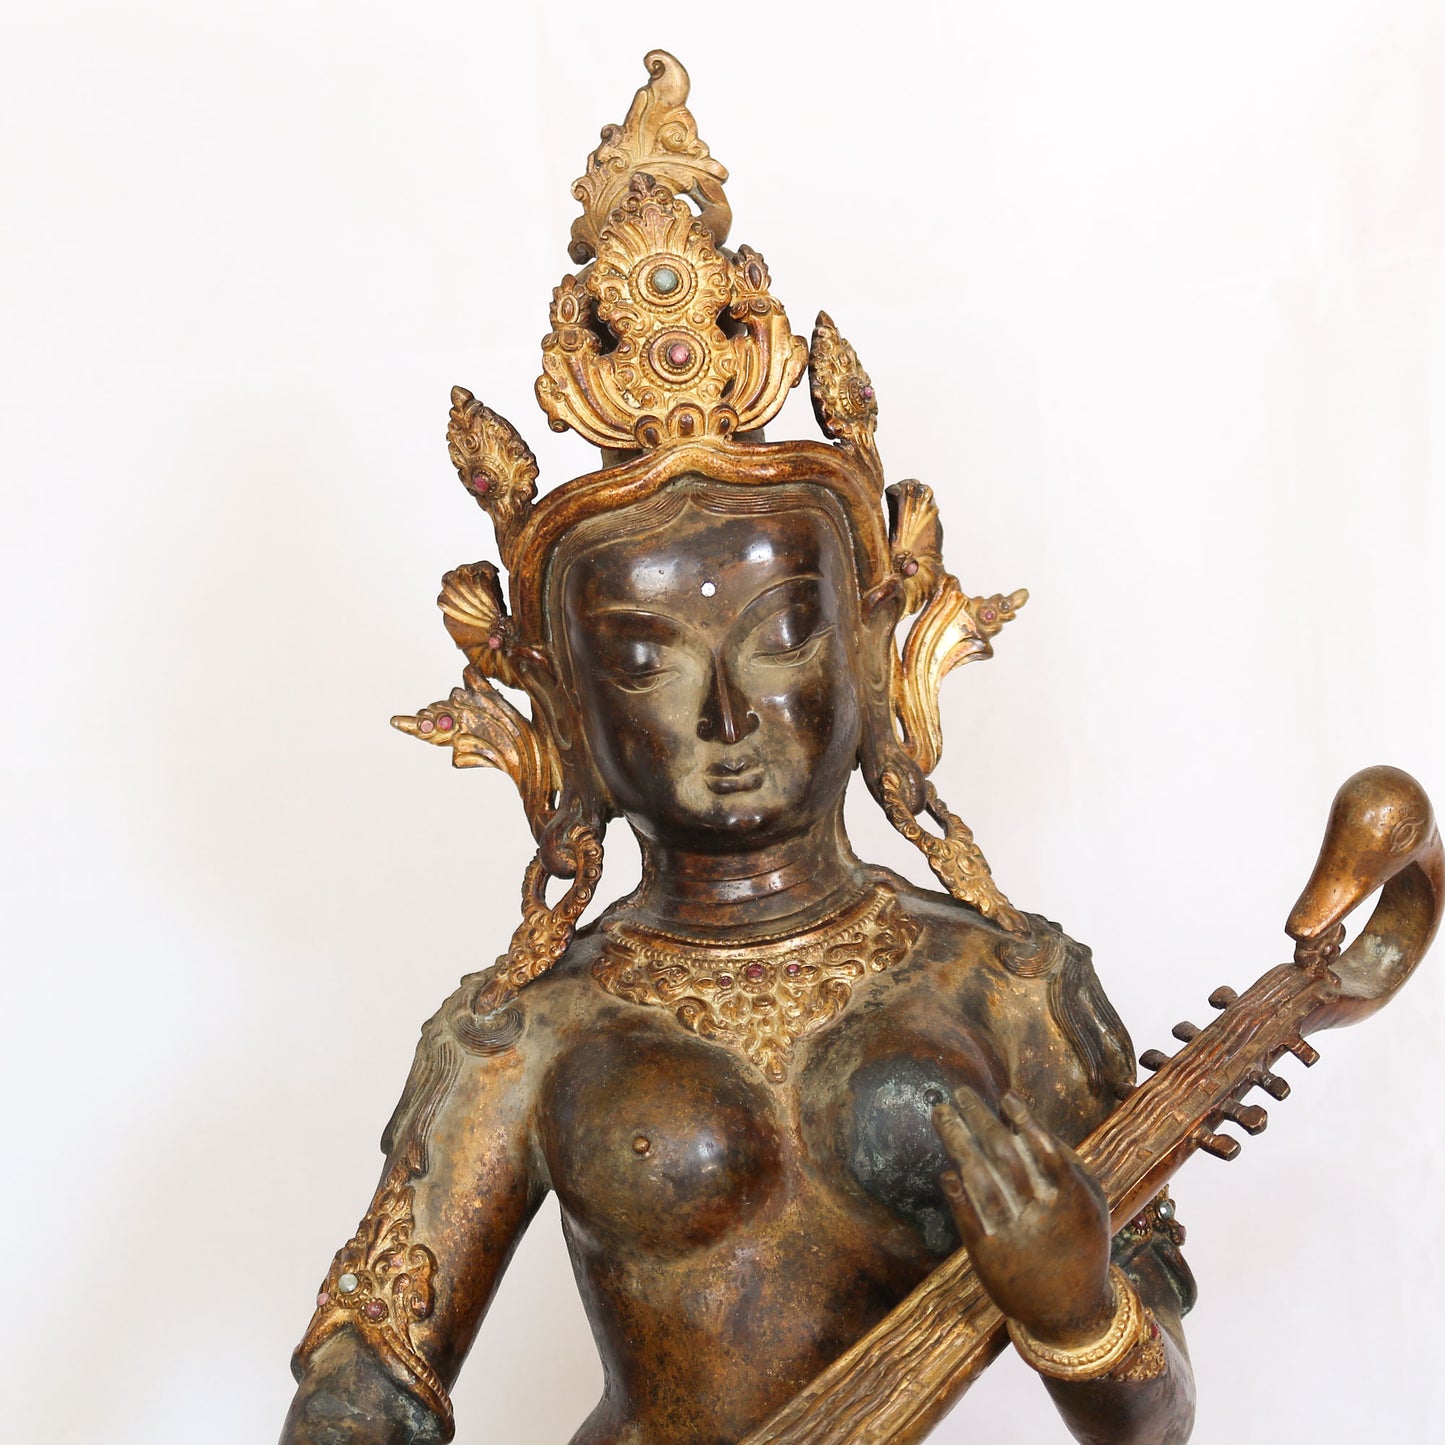 Saraswati Goddess statue